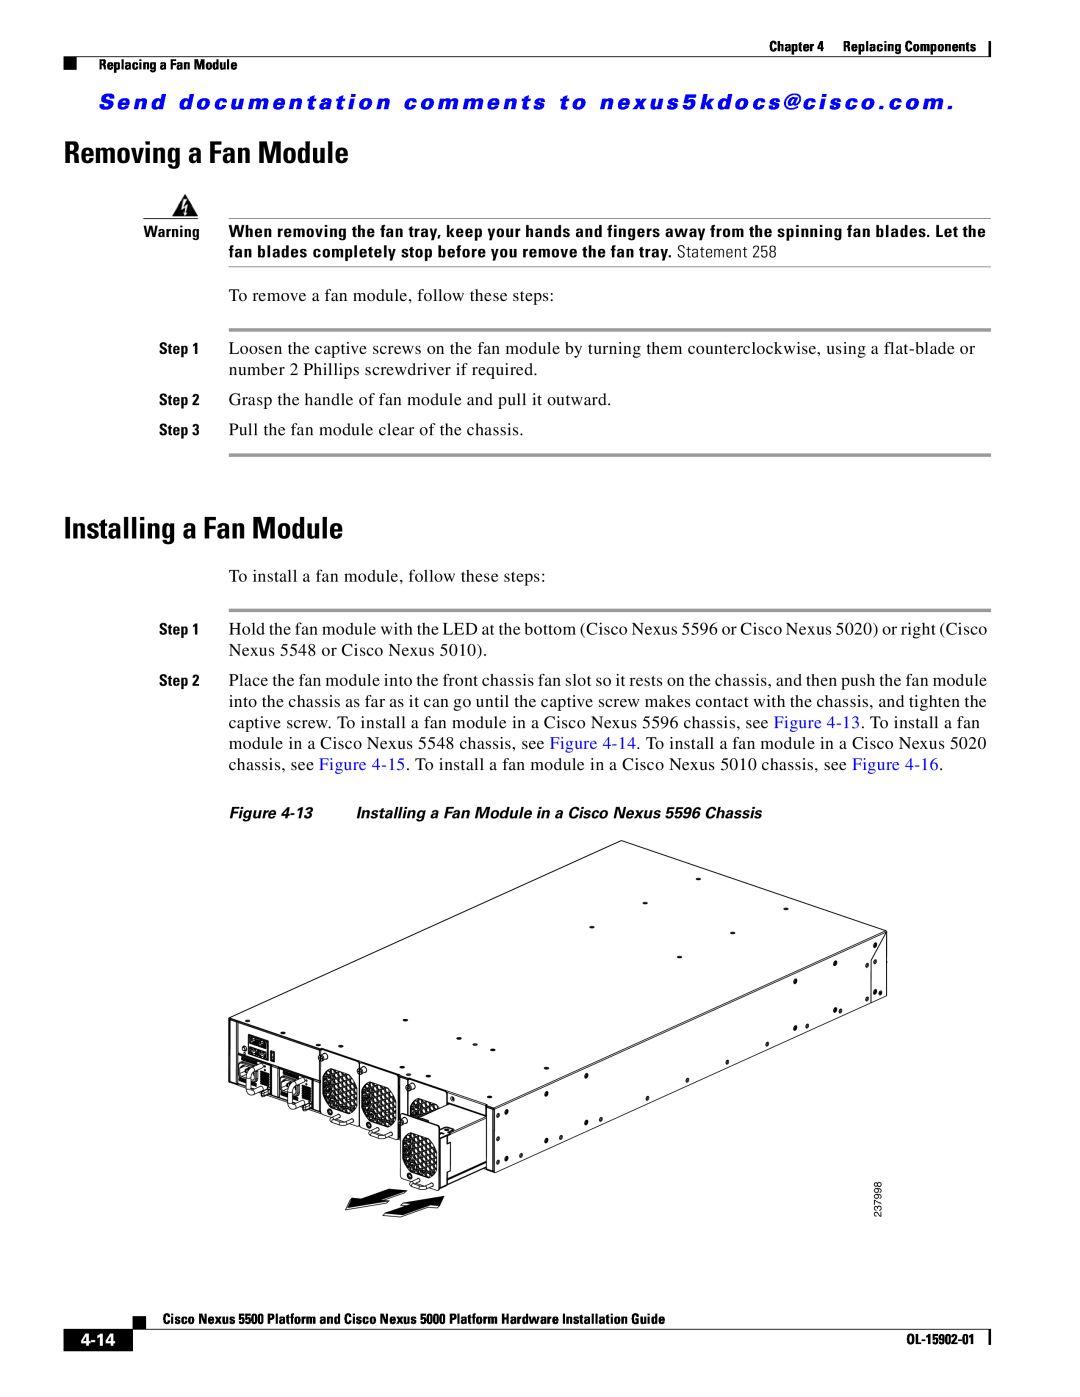 Cisco Systems 5000 manual Removing a Fan Module, Installing a Fan Module, 4-14 